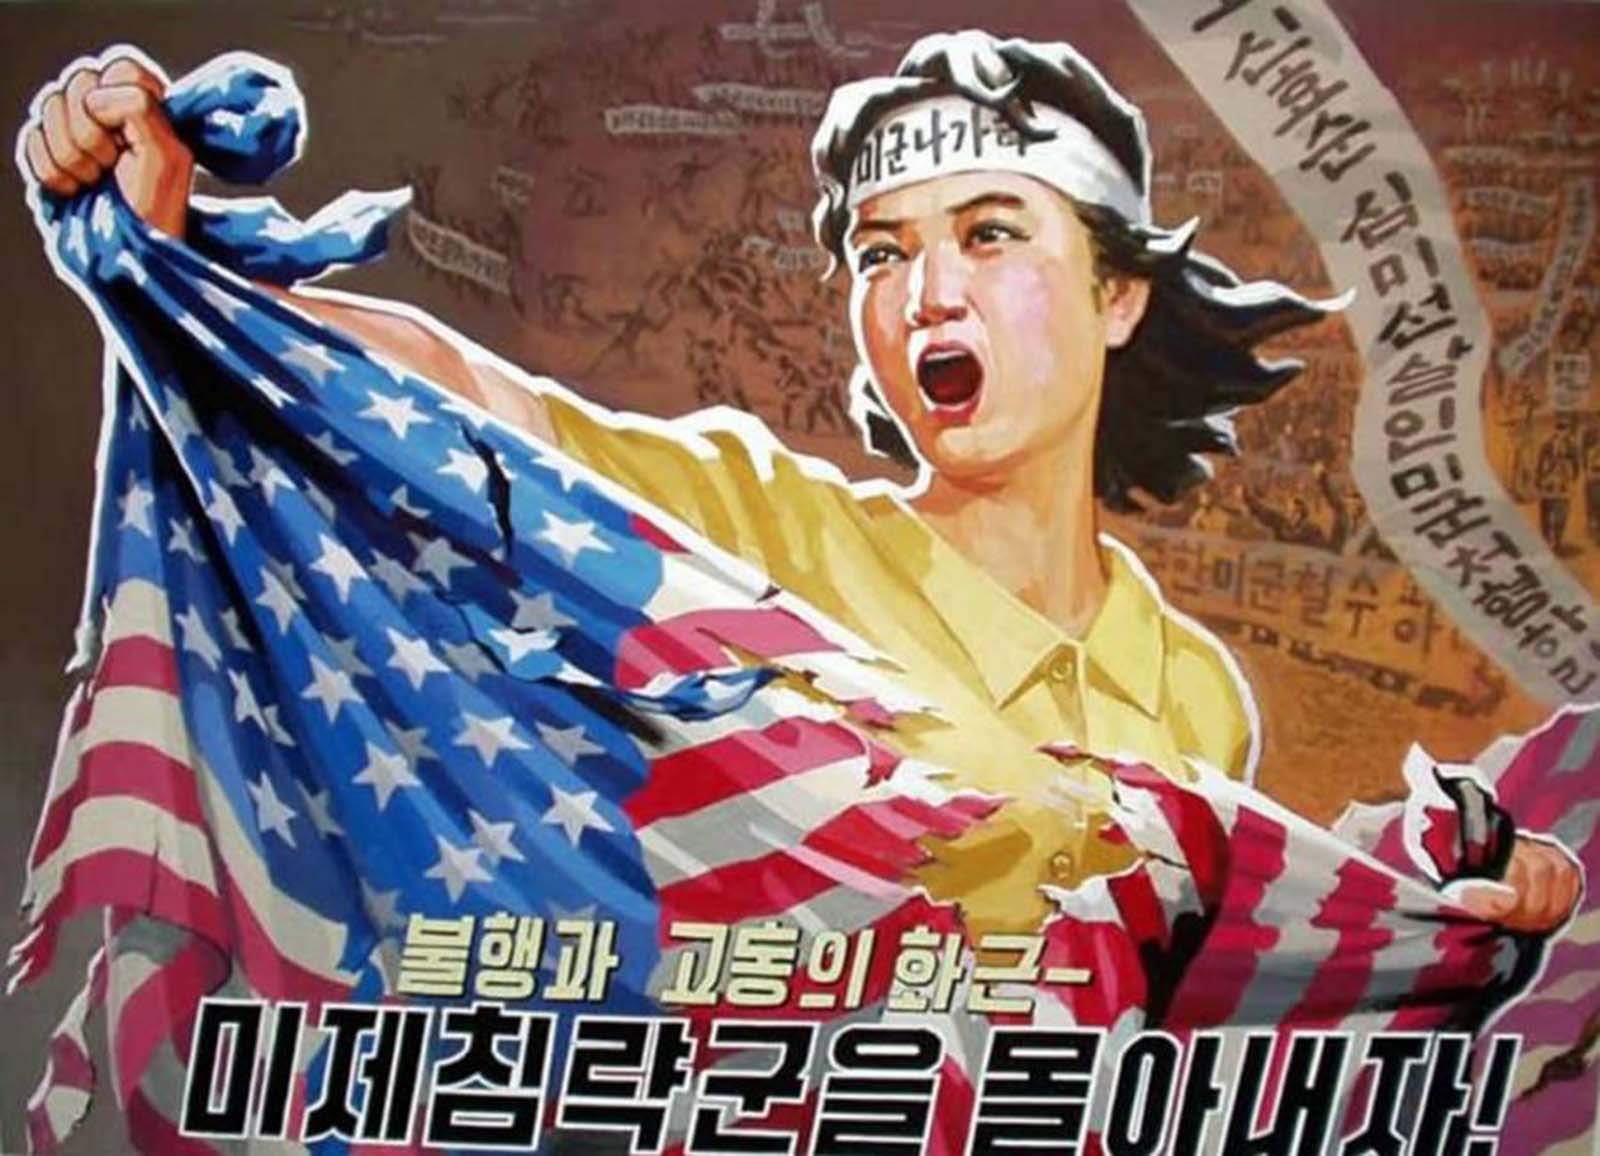 File:Korean anti-USA poster.png